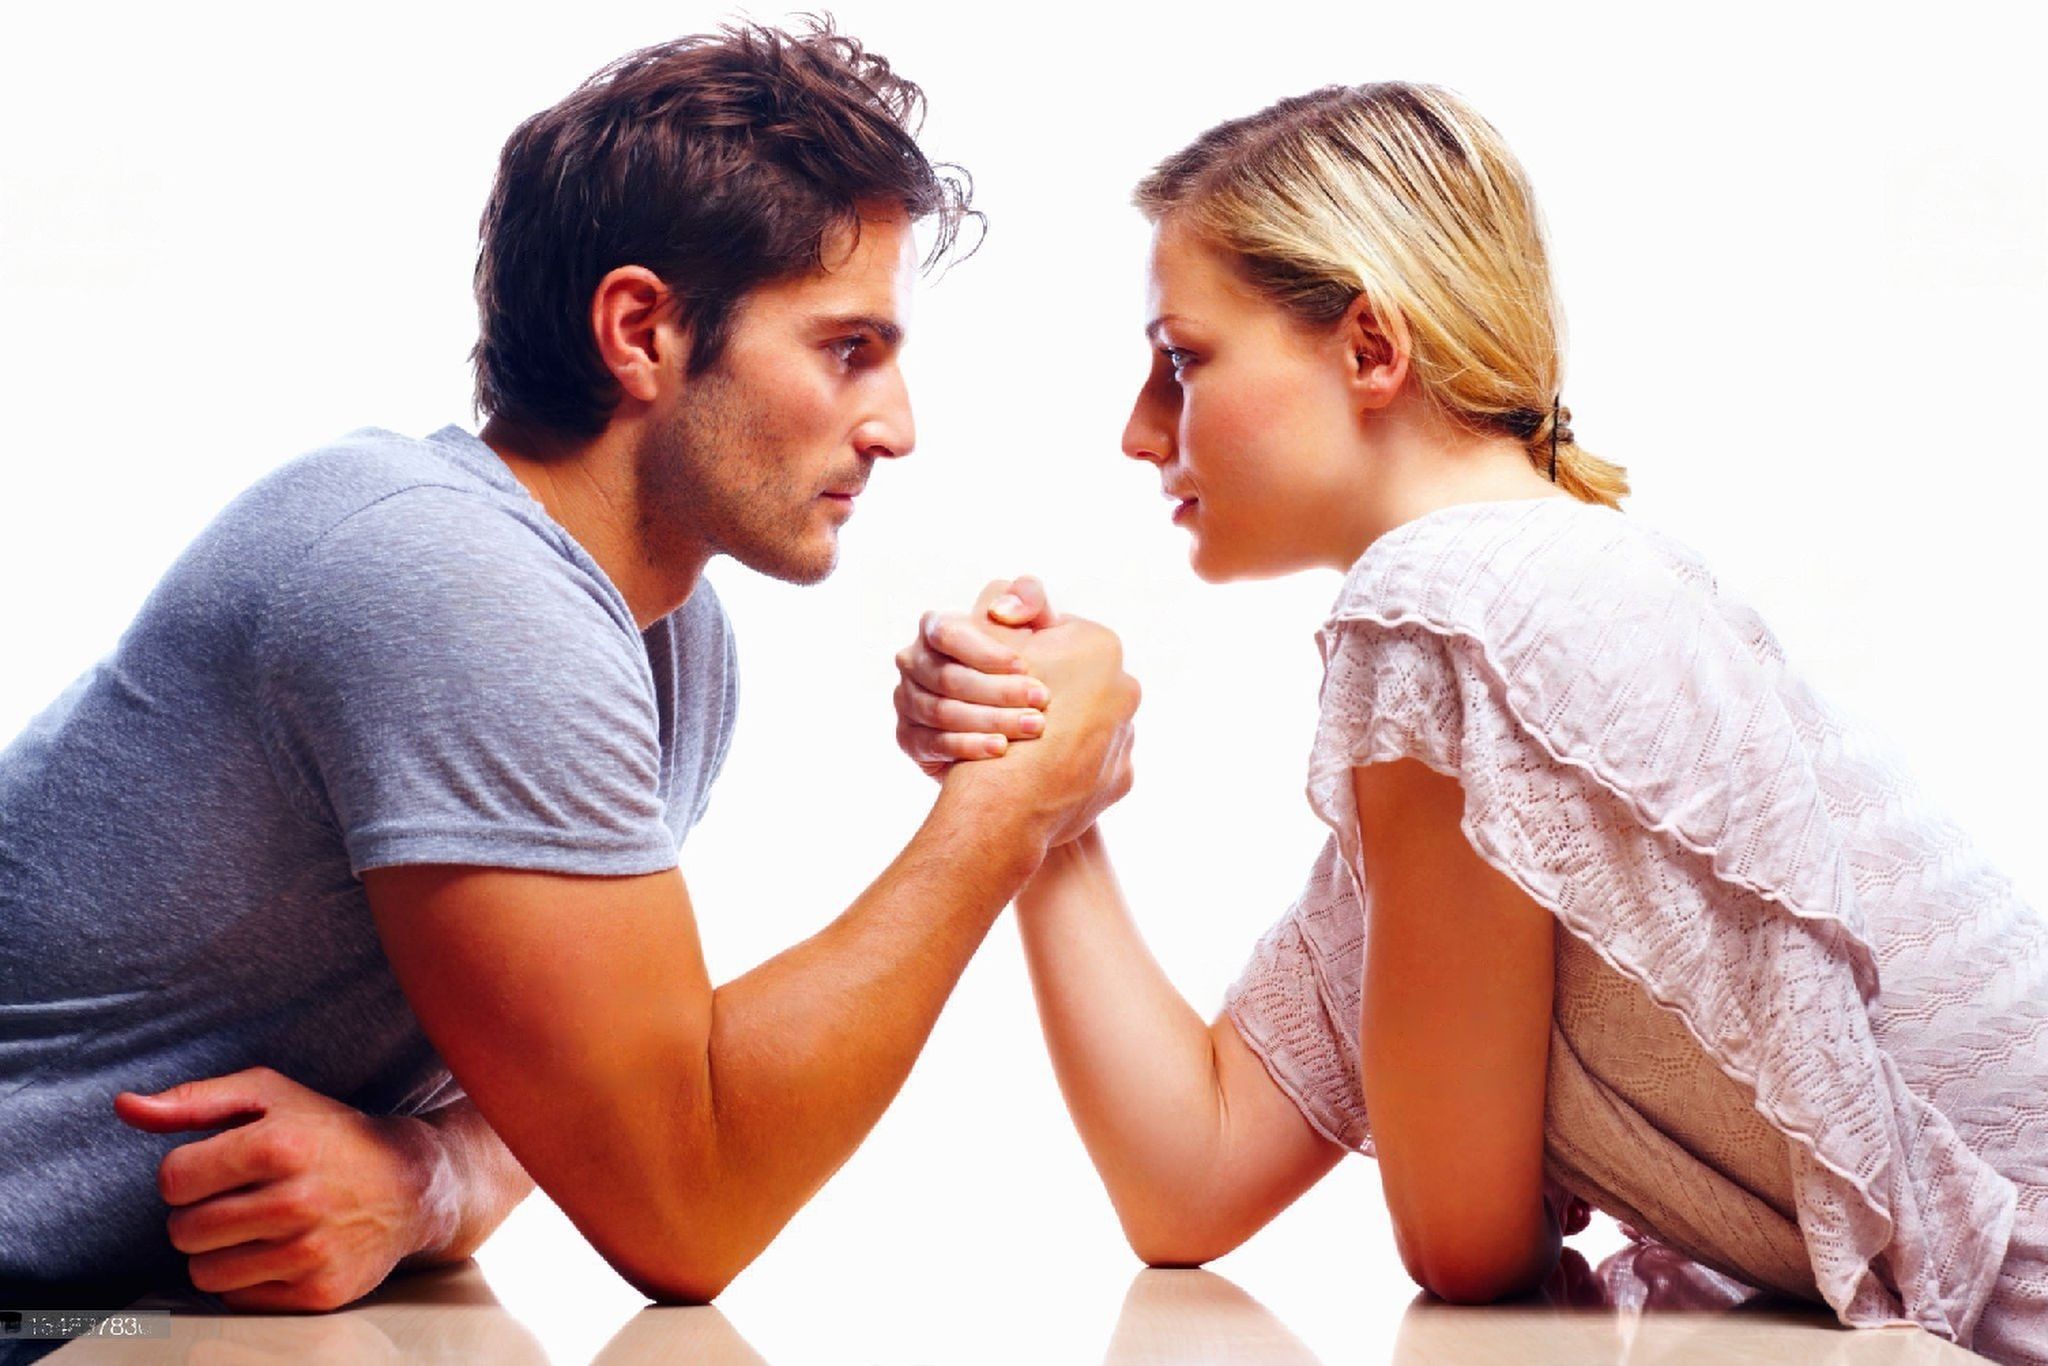 Обмен в жизни людей. Взаимоотношения мужчины и женщины. Мужчина и женщина спорят. Ссора между мужчиной и женщиной. Спор между мужчиной и женщиной.